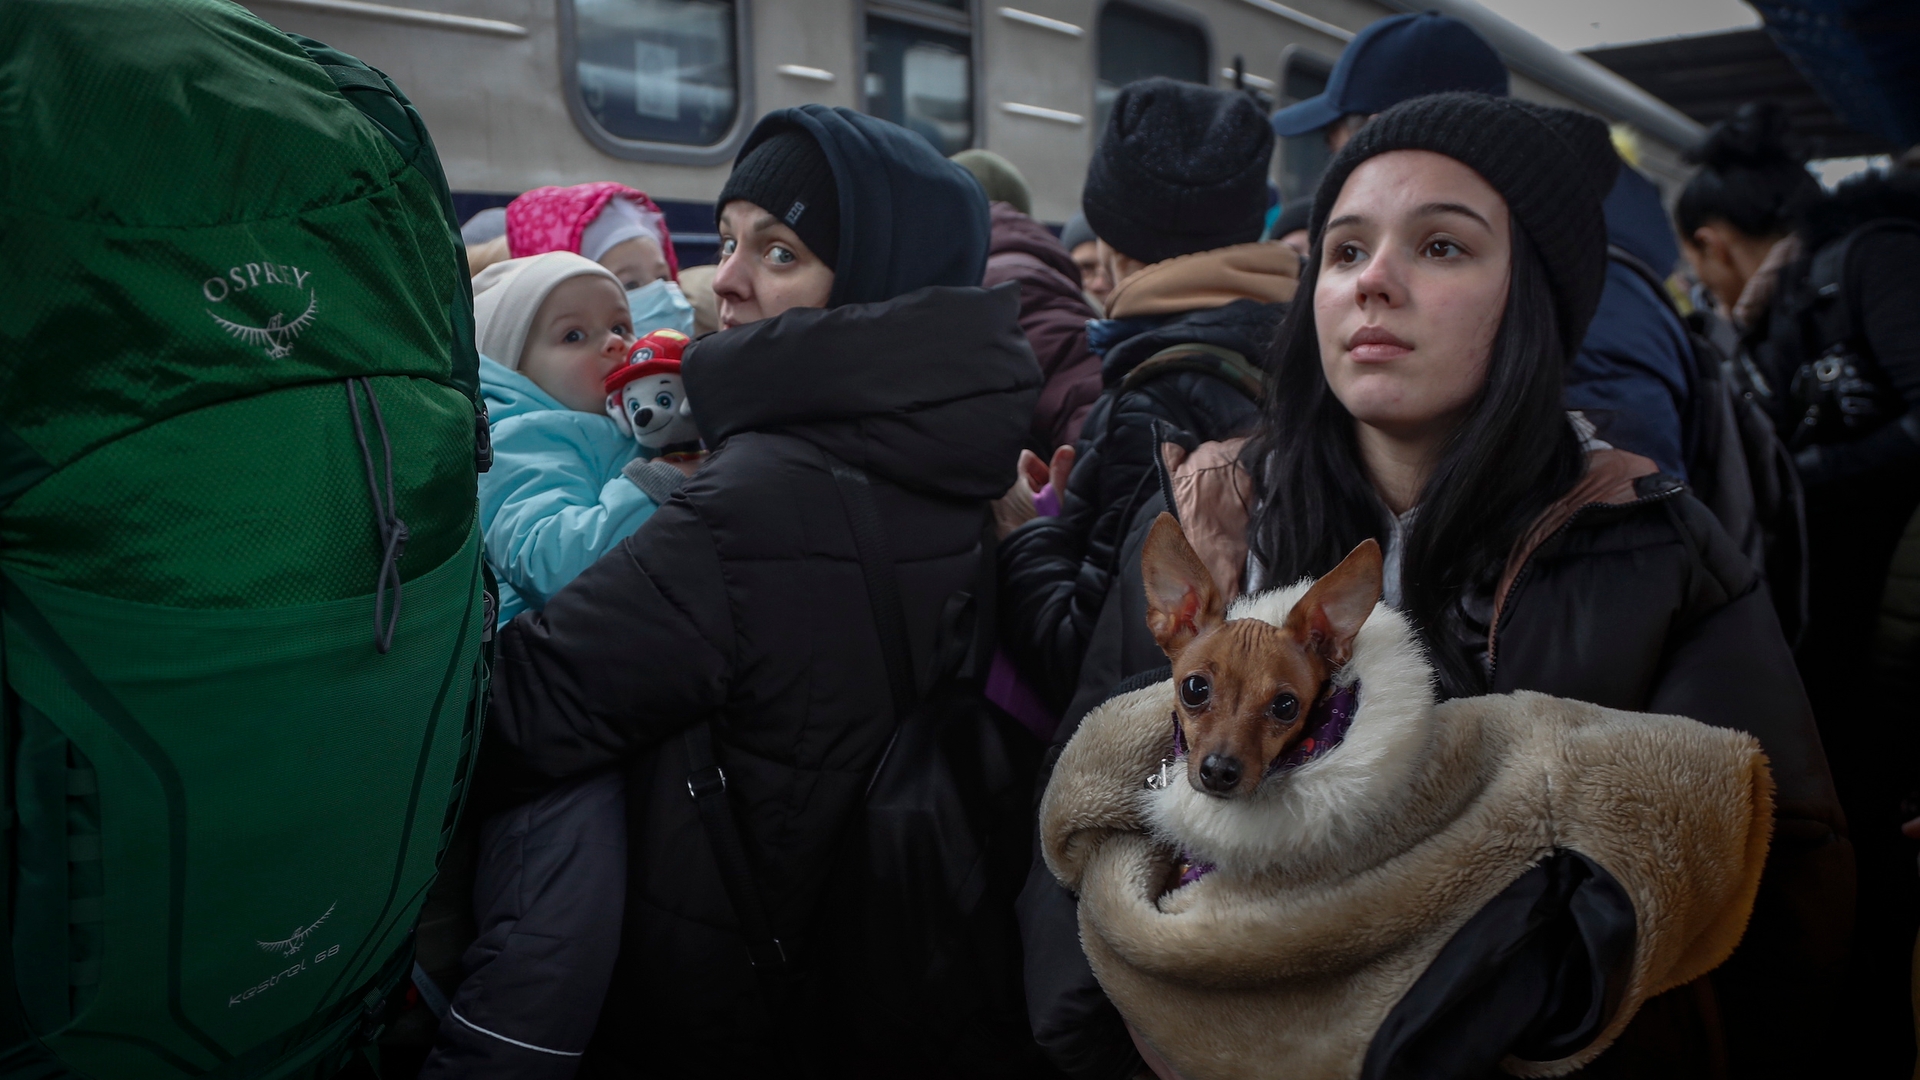 Ukrainians swarm railway station as they try to flee Kyiv